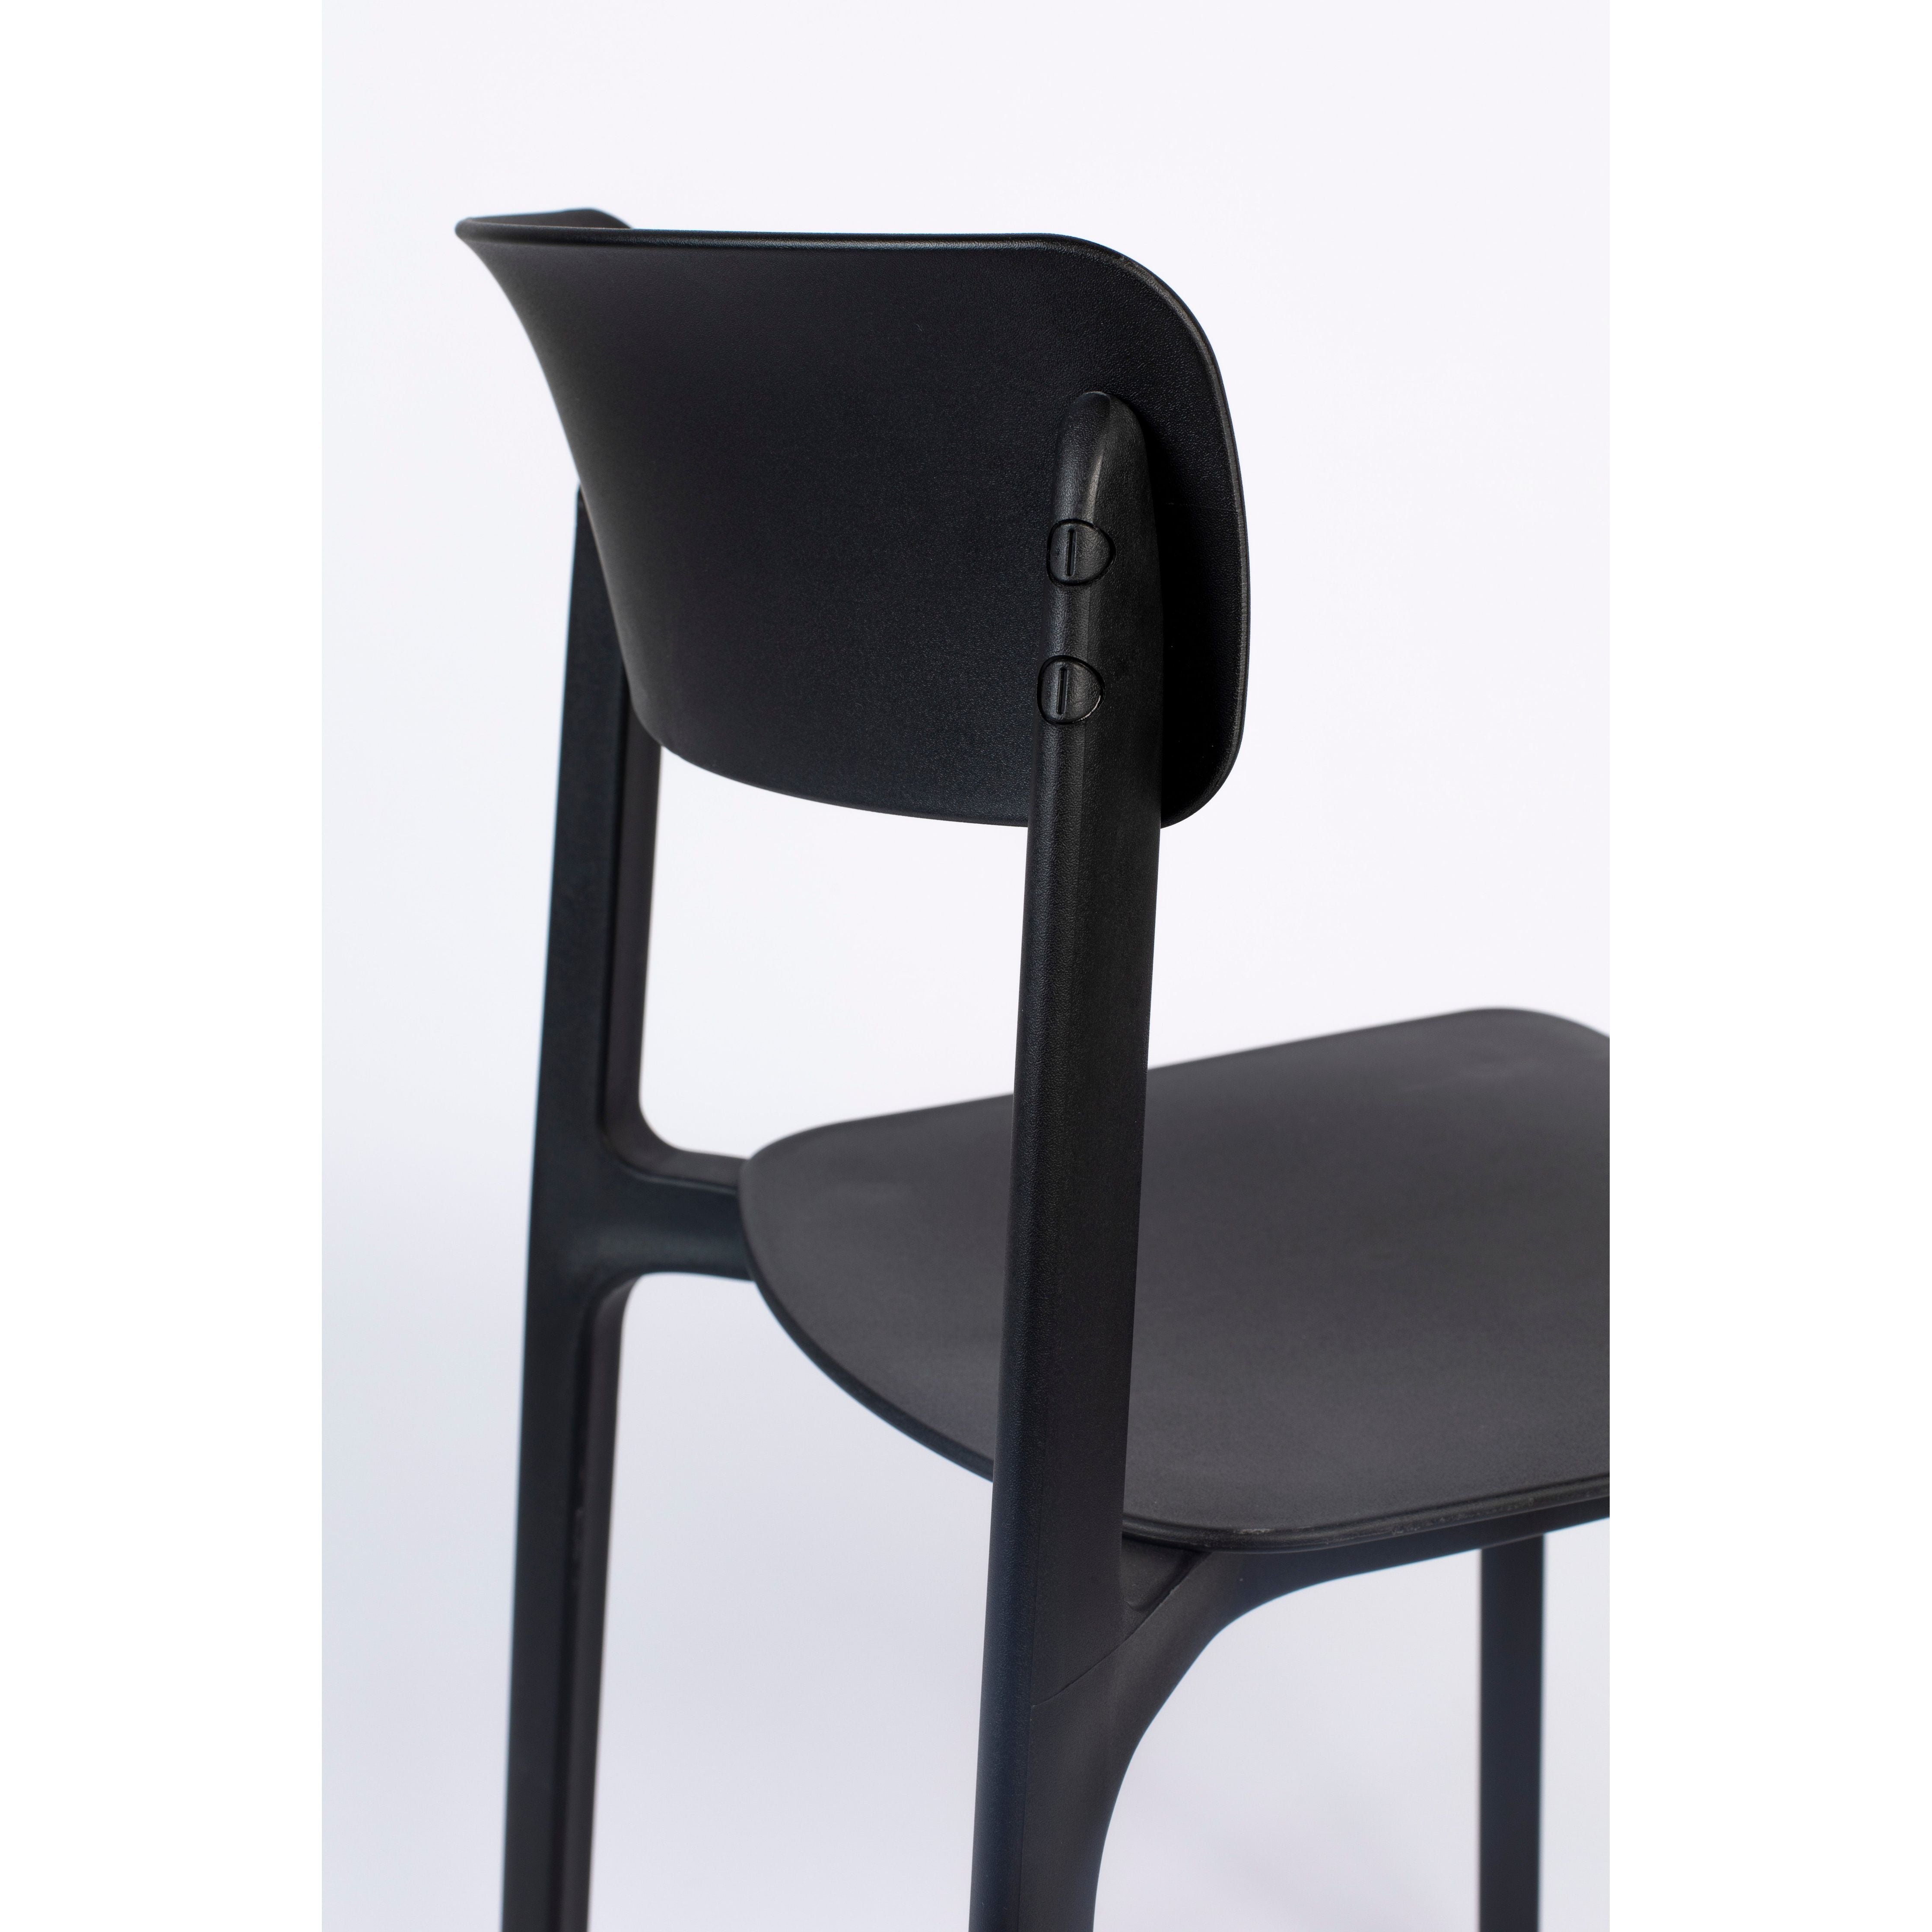 Chair clive black | 4 pieces